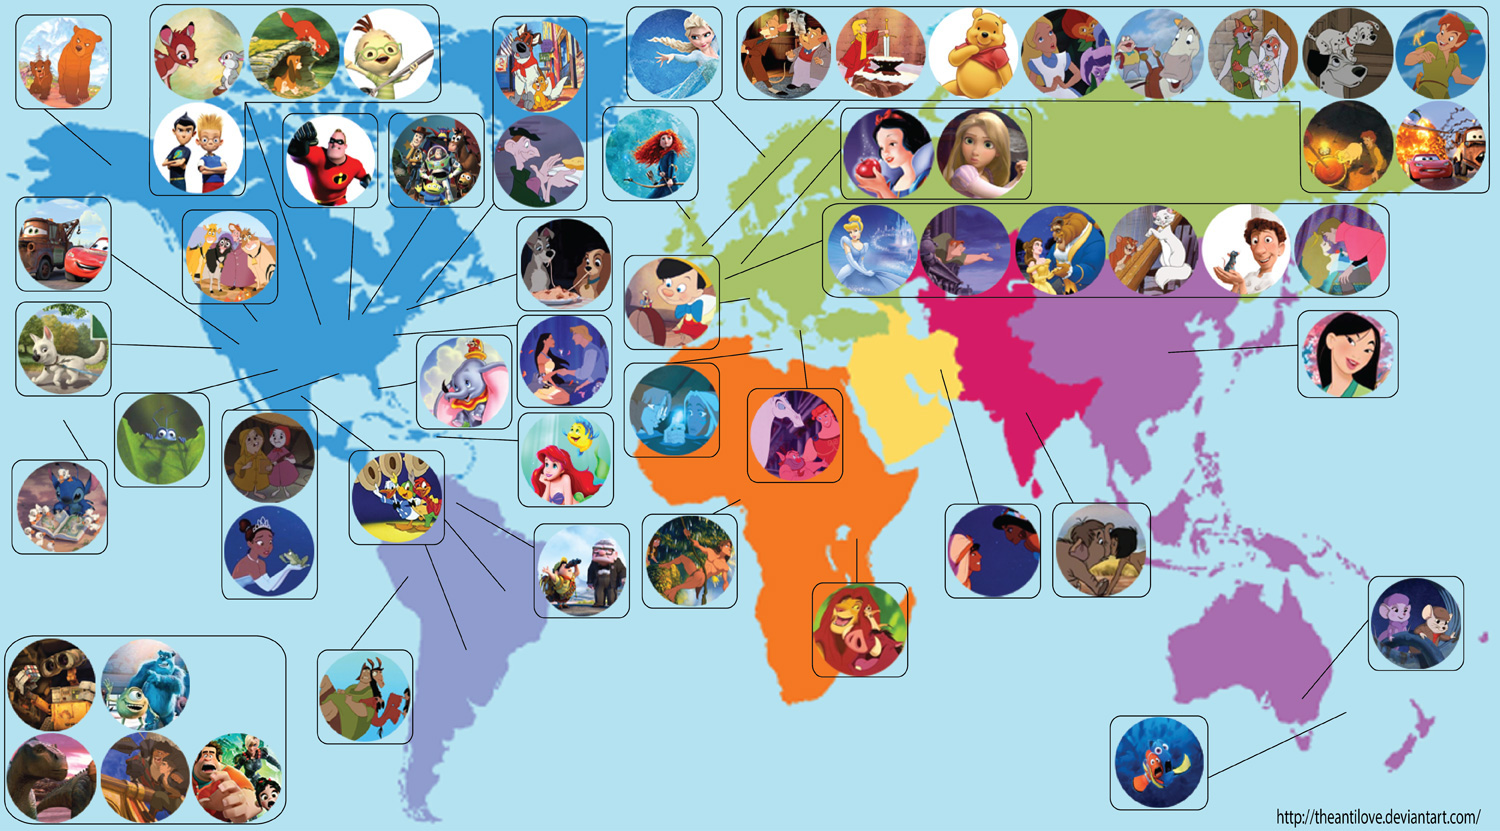 ディズニーキャラクターの住む場所が一目で分かる世界地図が話題に ディズニー裏話 雑学 トリビアが2 000話以上 ディズニーブログ じゃみログ